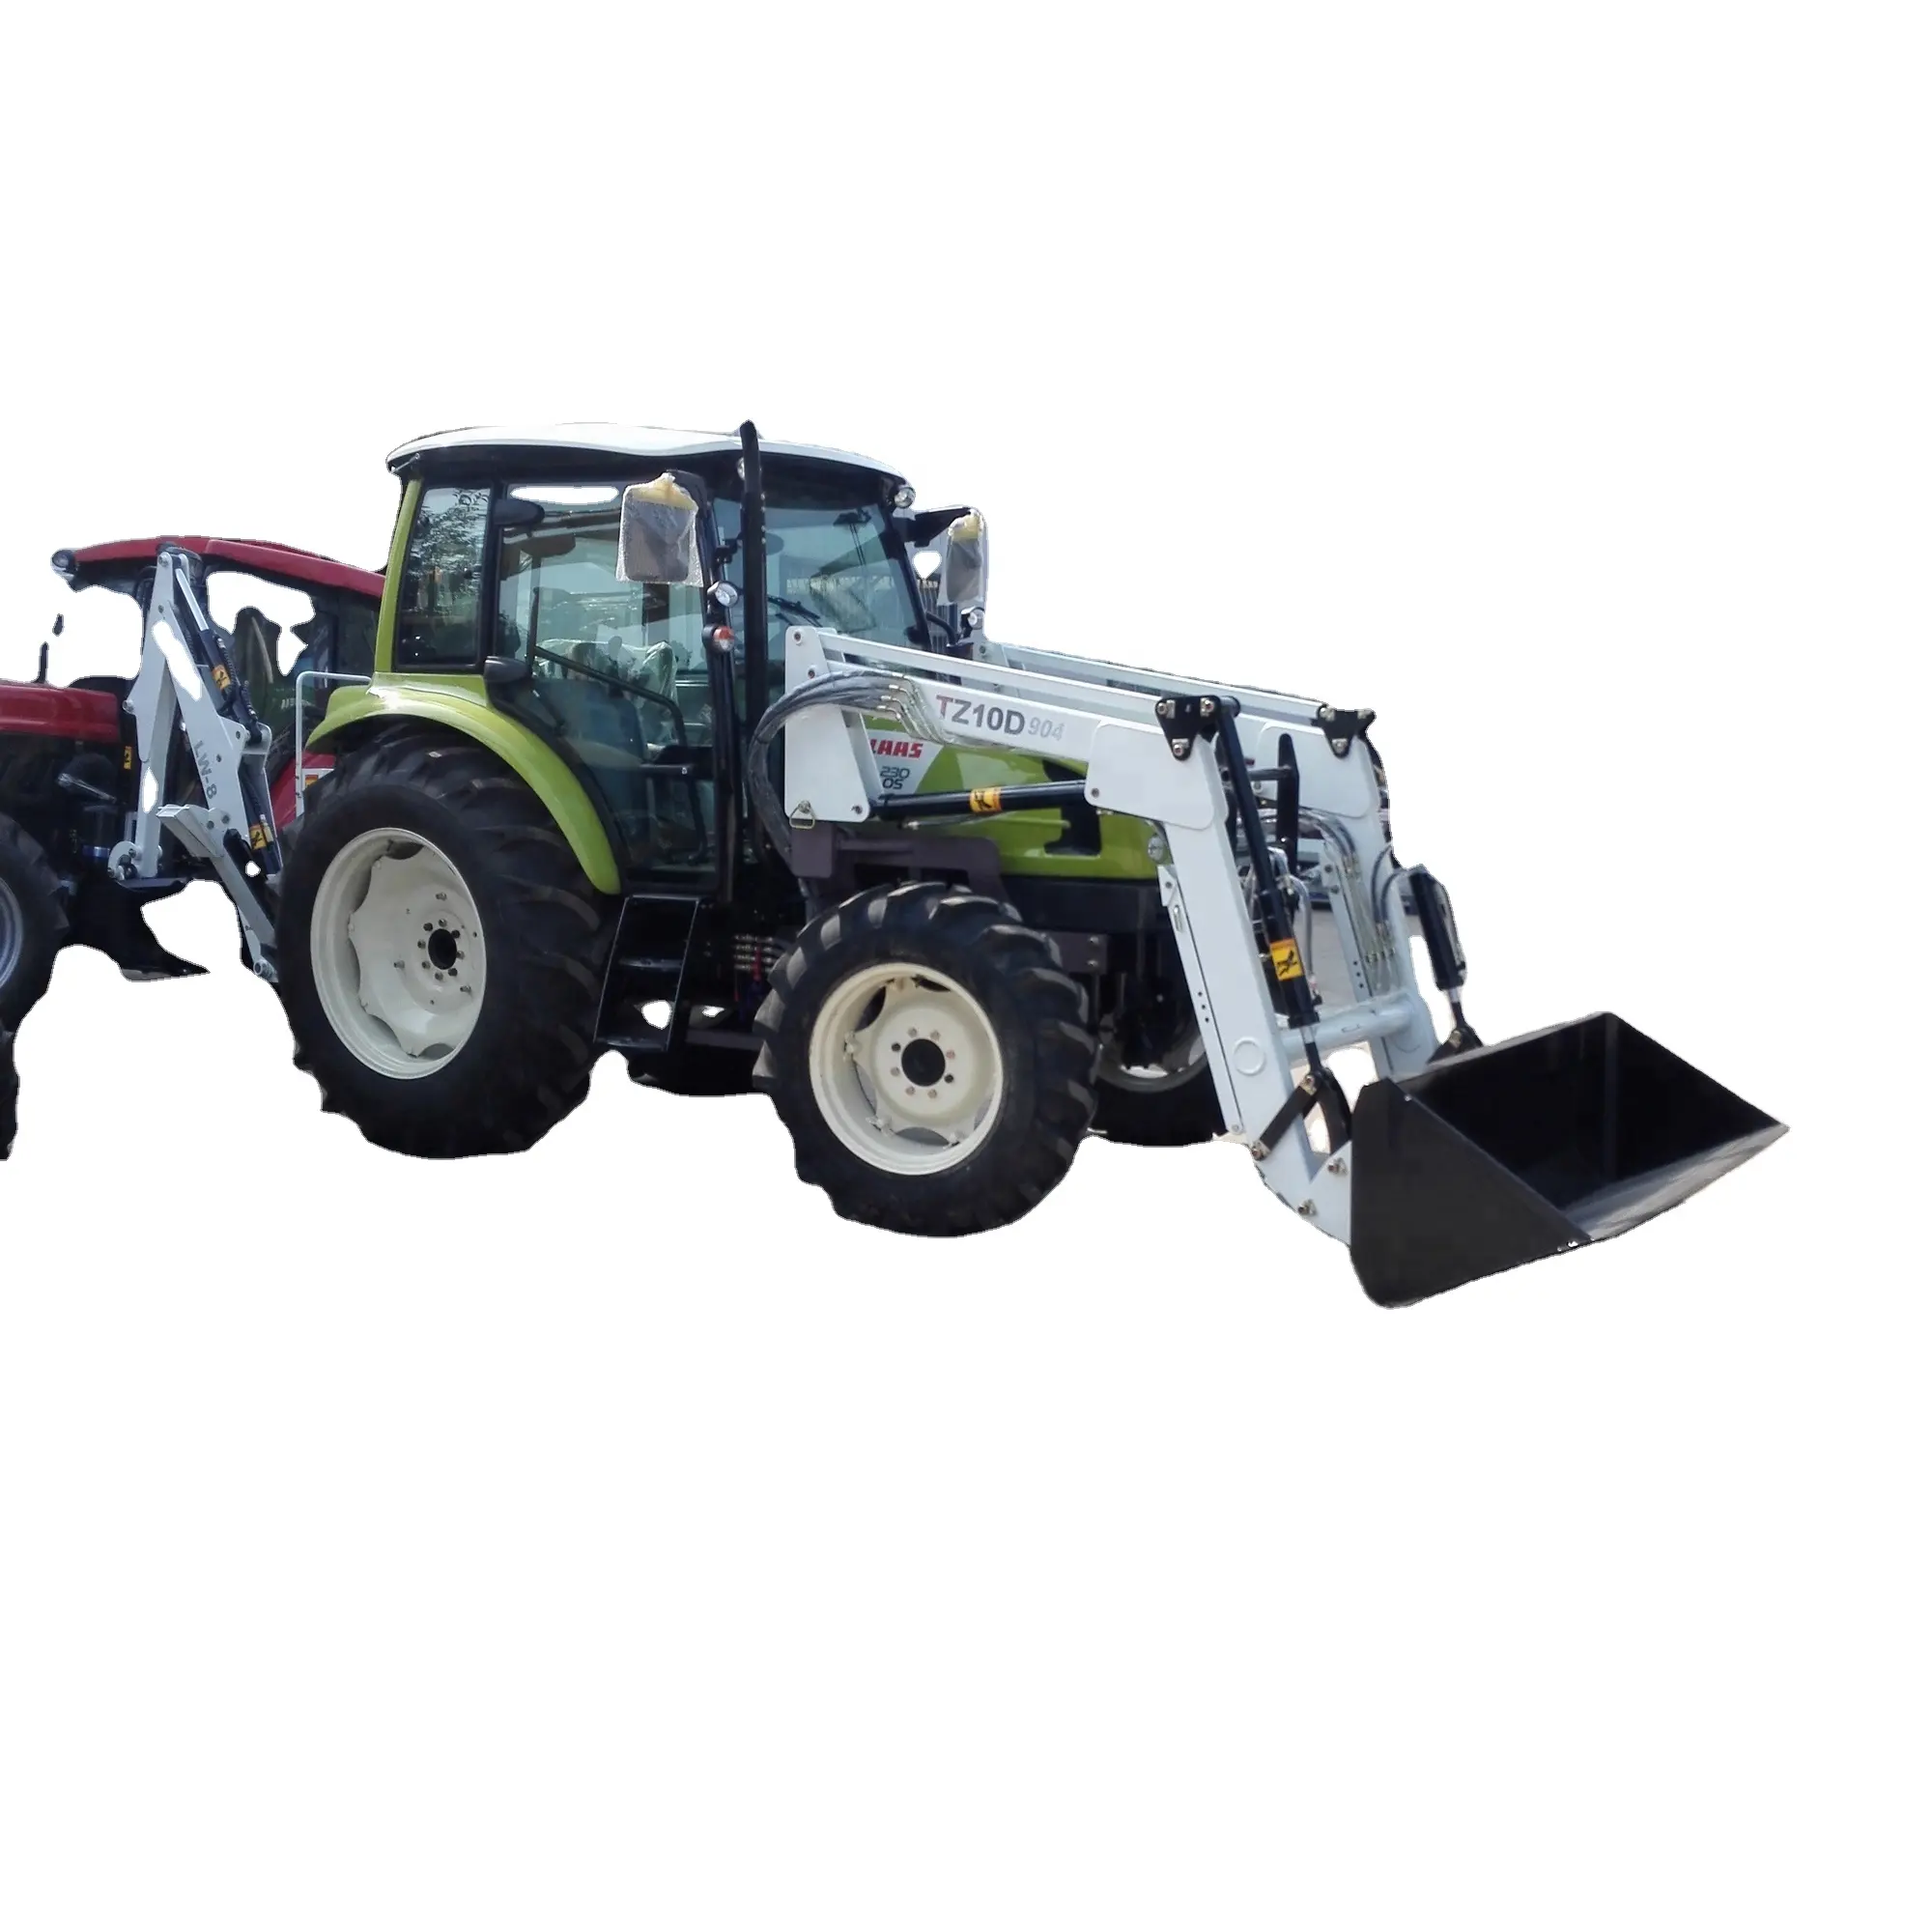 Sertifikat CE 4WD Traktor Pertanian dengan Peralatan Pertanian Loader Depan